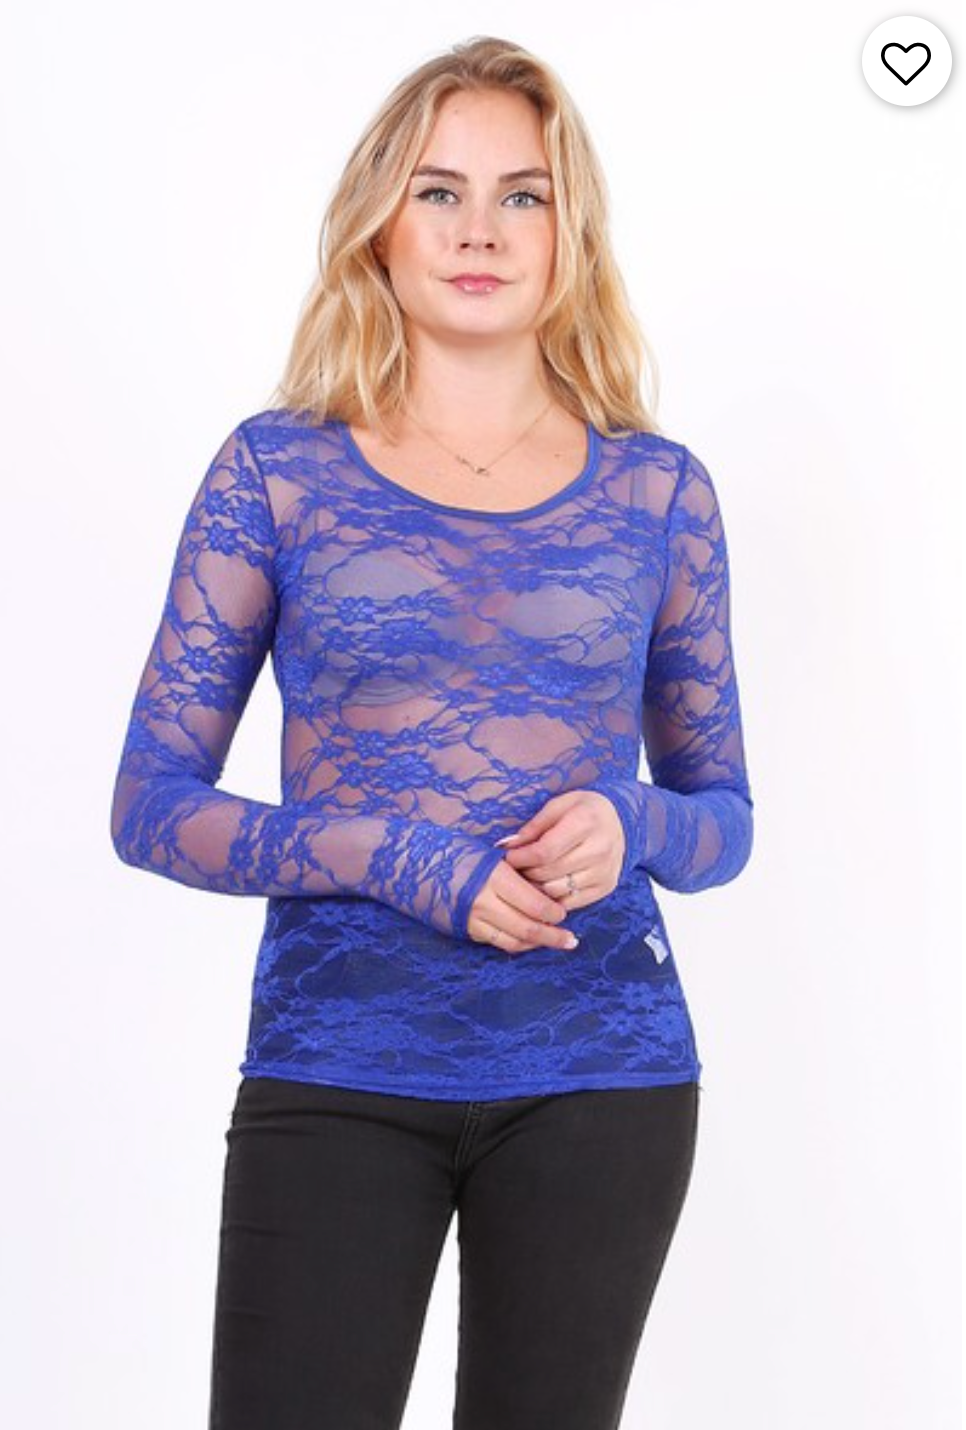 Lace mesh blouse